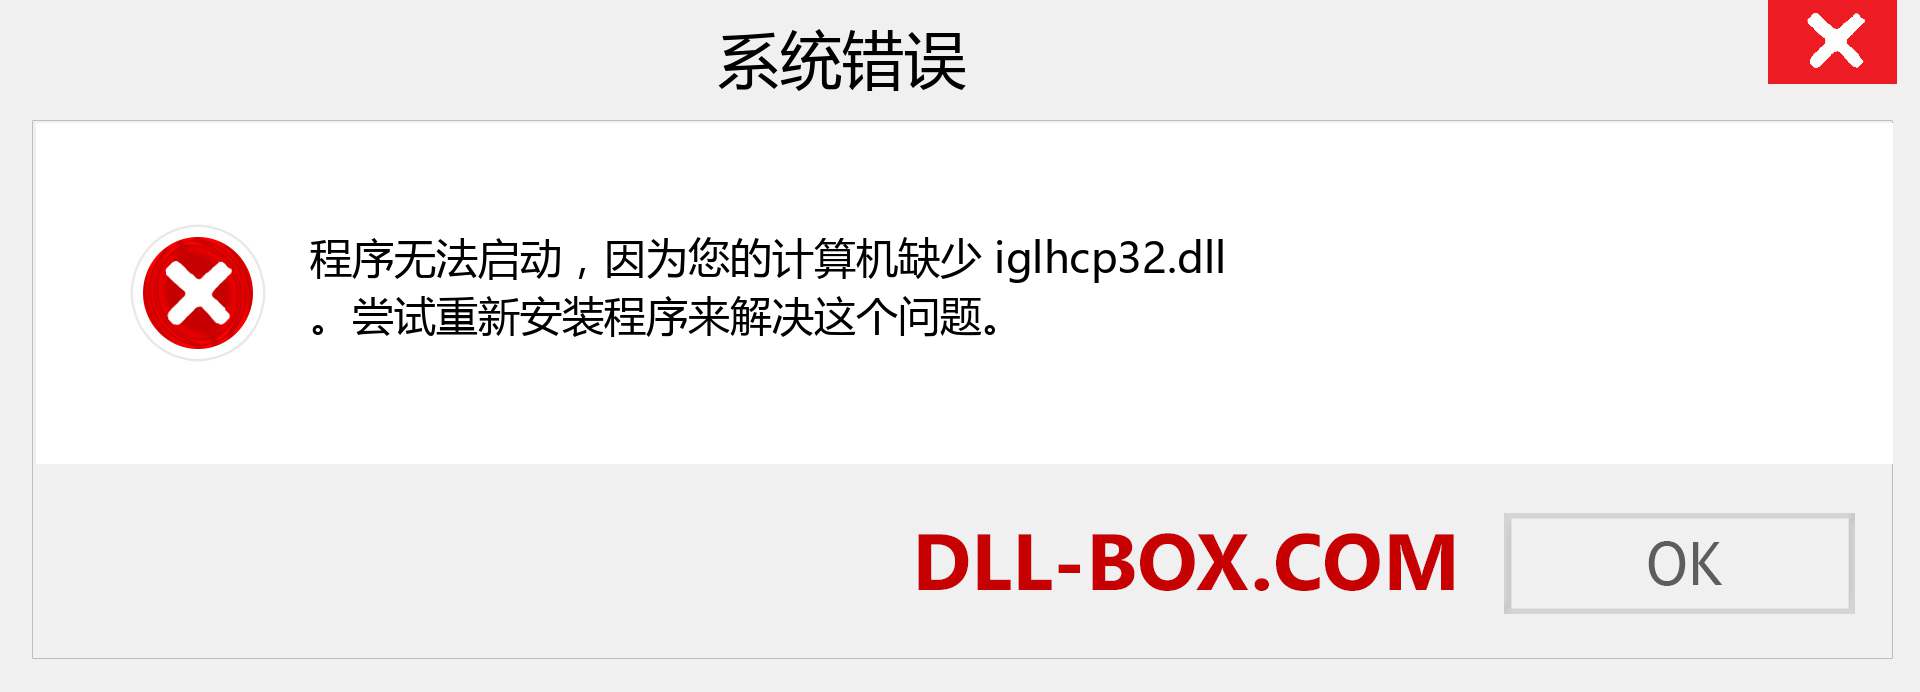 iglhcp32.dll 文件丢失？。 适用于 Windows 7、8、10 的下载 - 修复 Windows、照片、图像上的 iglhcp32 dll 丢失错误